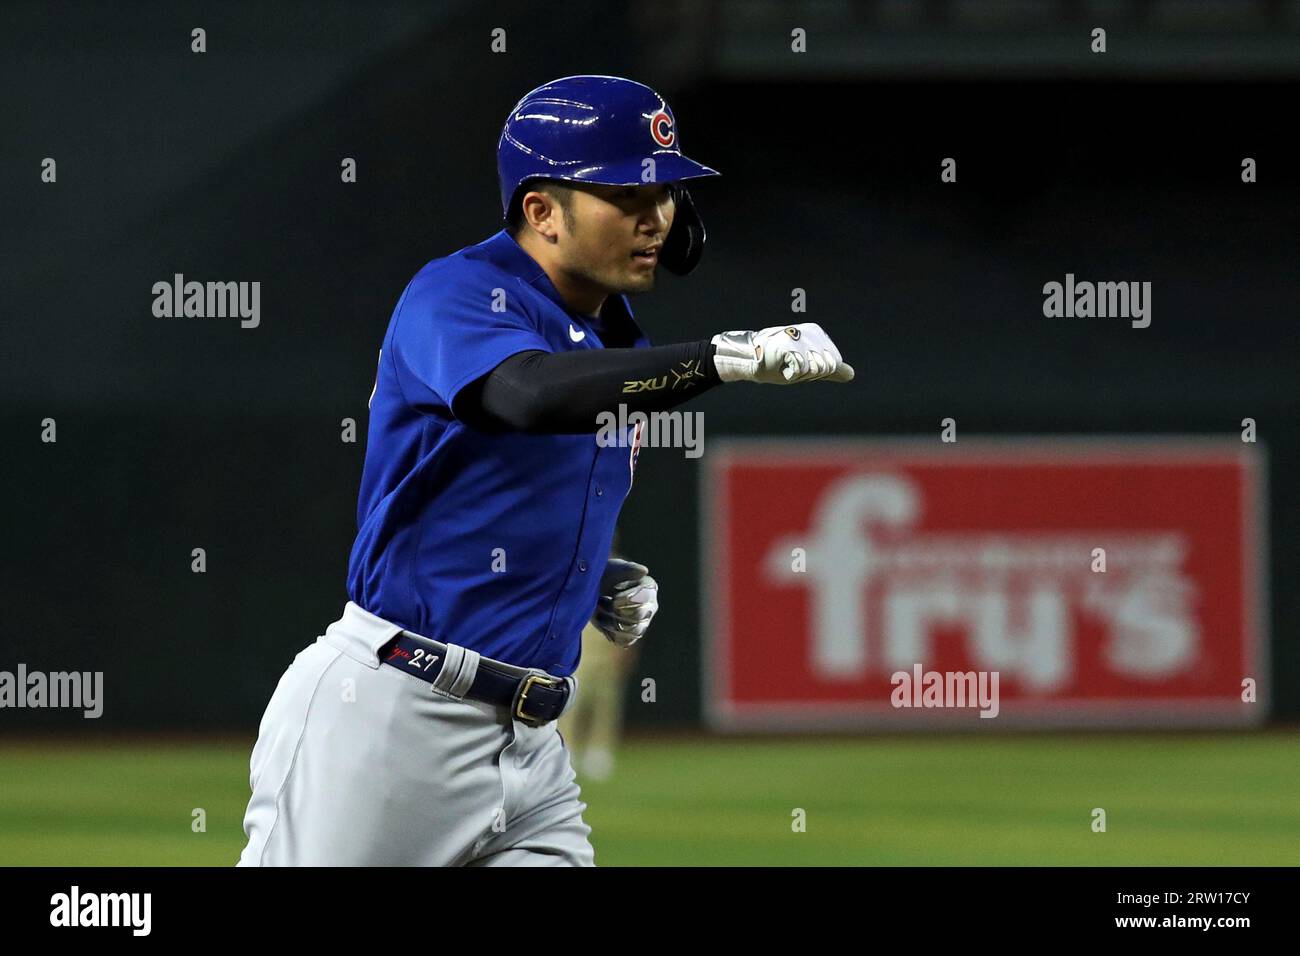 Chicago Cubs 2023 Season Preview: Right fielder Seiya Suzuki